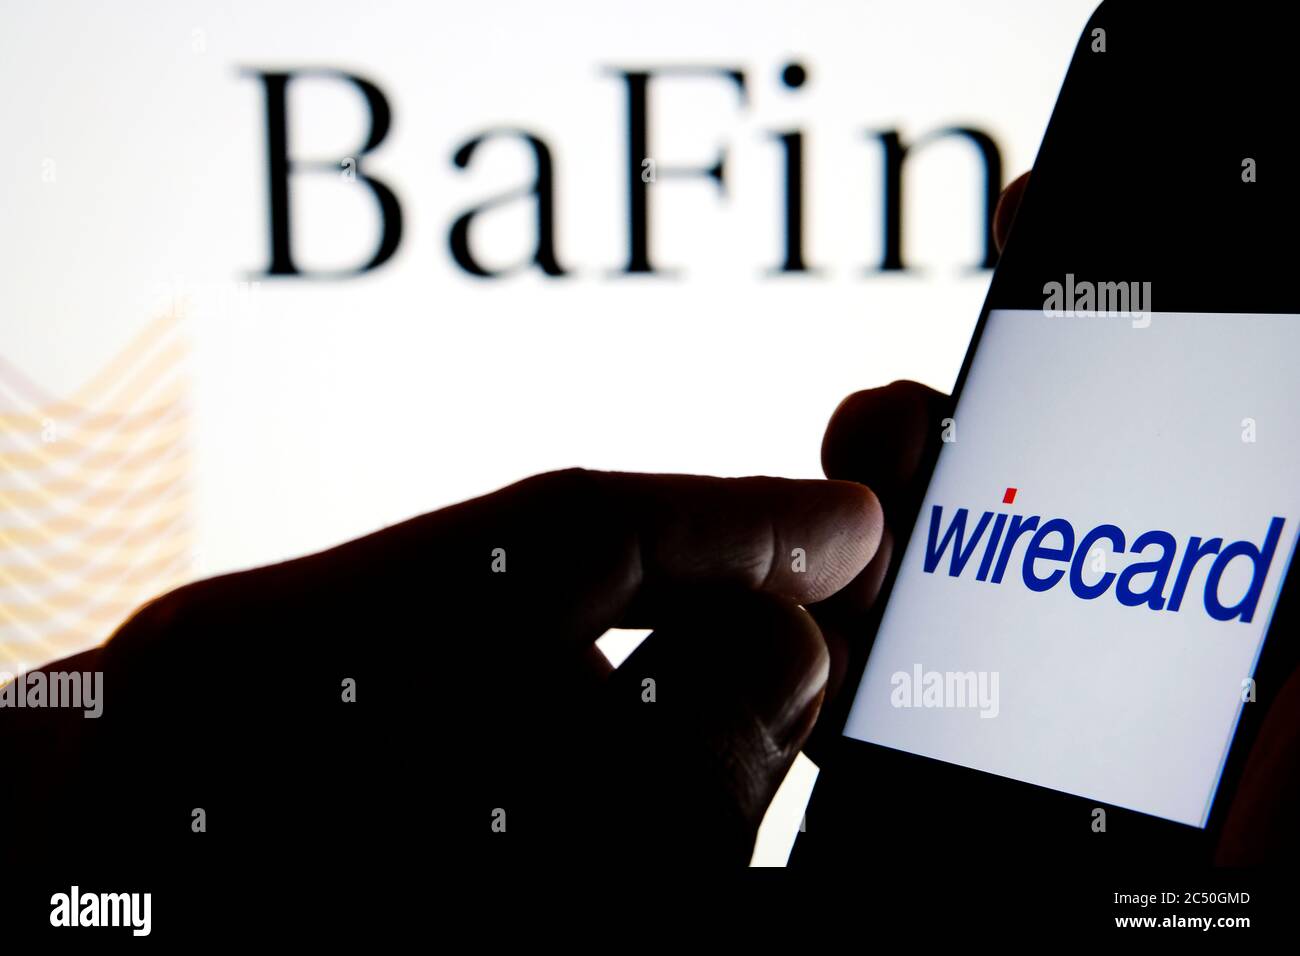 Wirecard-Logo auf dem Smartphone und BaFin-Logo auf dem unscharfen Hintergrundbildschirm. Stockfoto